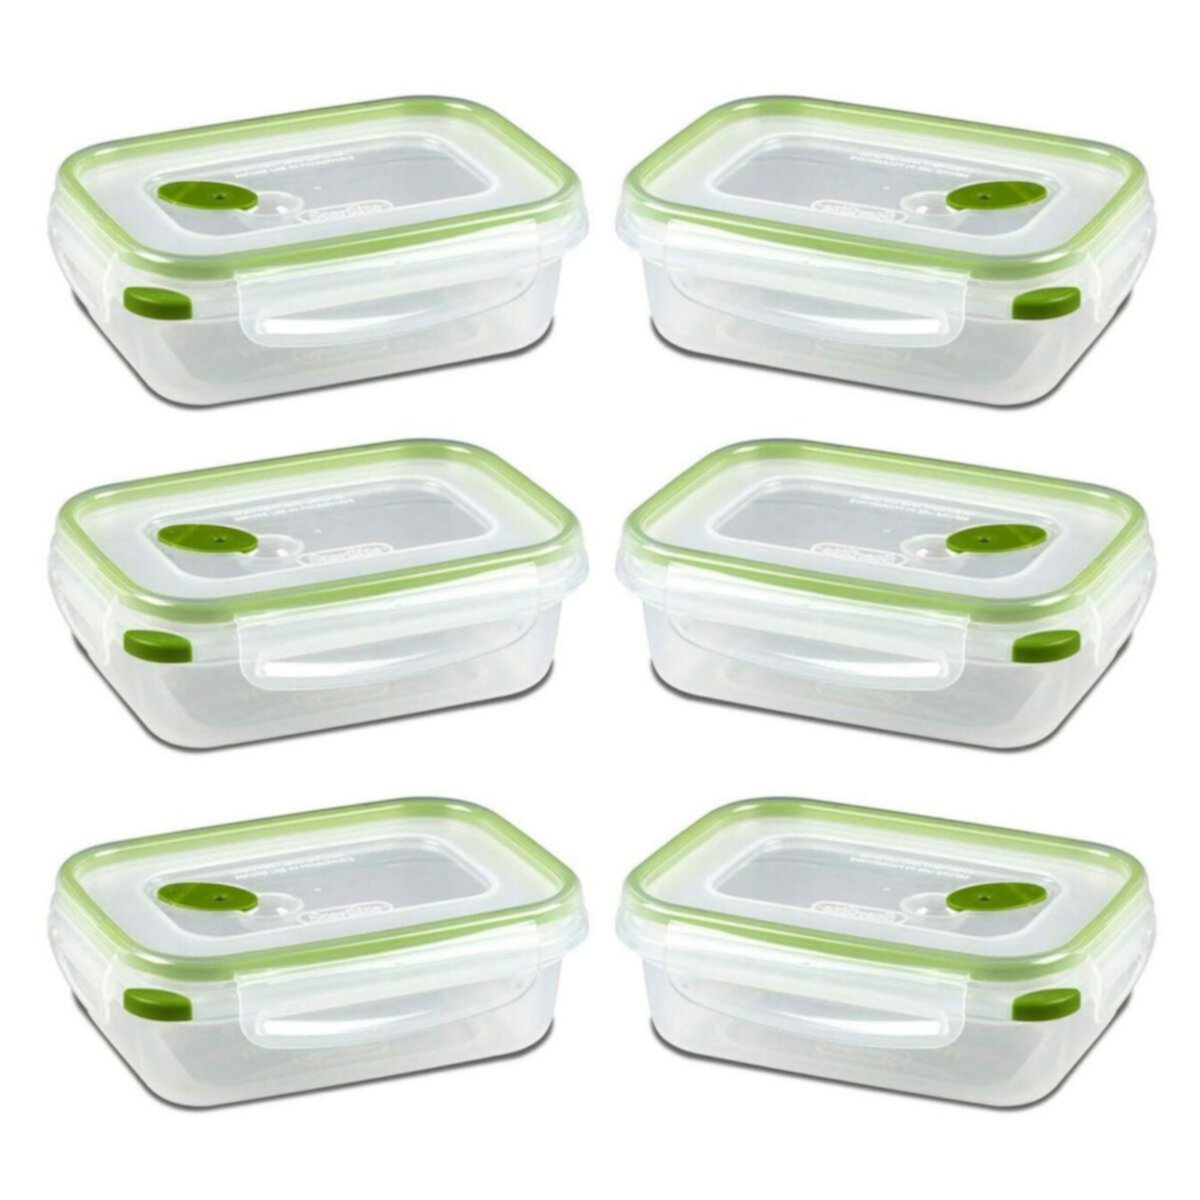 Sterilite 03111606 Прямоугольный контейнер Ultra-Seal для хранения продуктов на 3,1 чашки, зеленый (6 шт. в упаковке) Sterilite